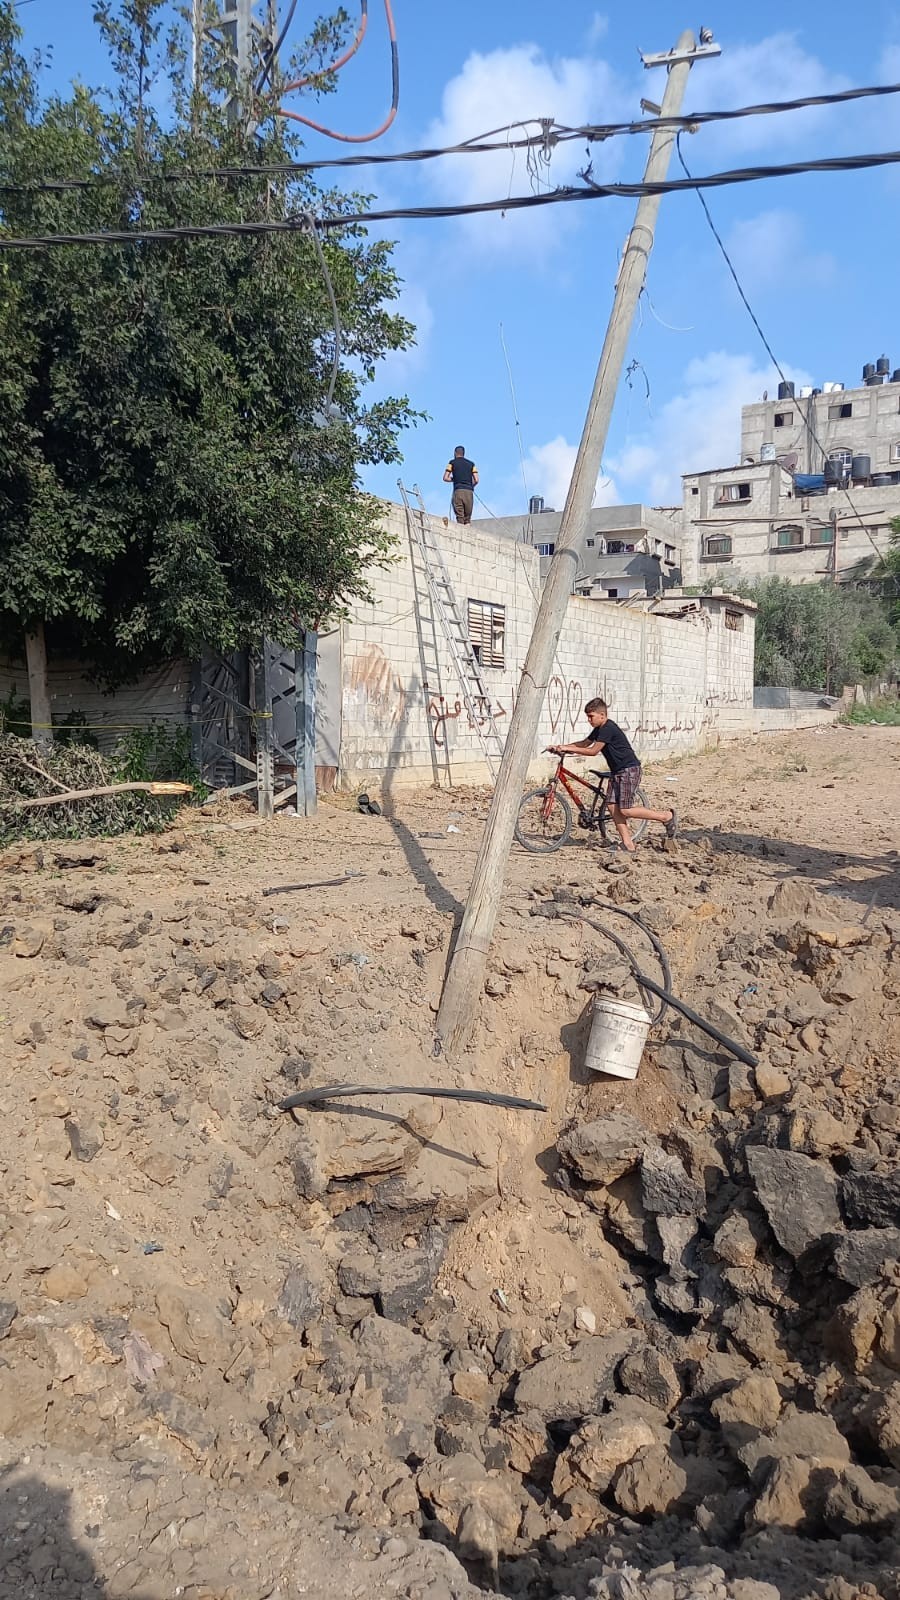 أعطال كبيرة في شبكات الكهرباء نتيجة العدوان الإسرائيلي على قطاع غزة